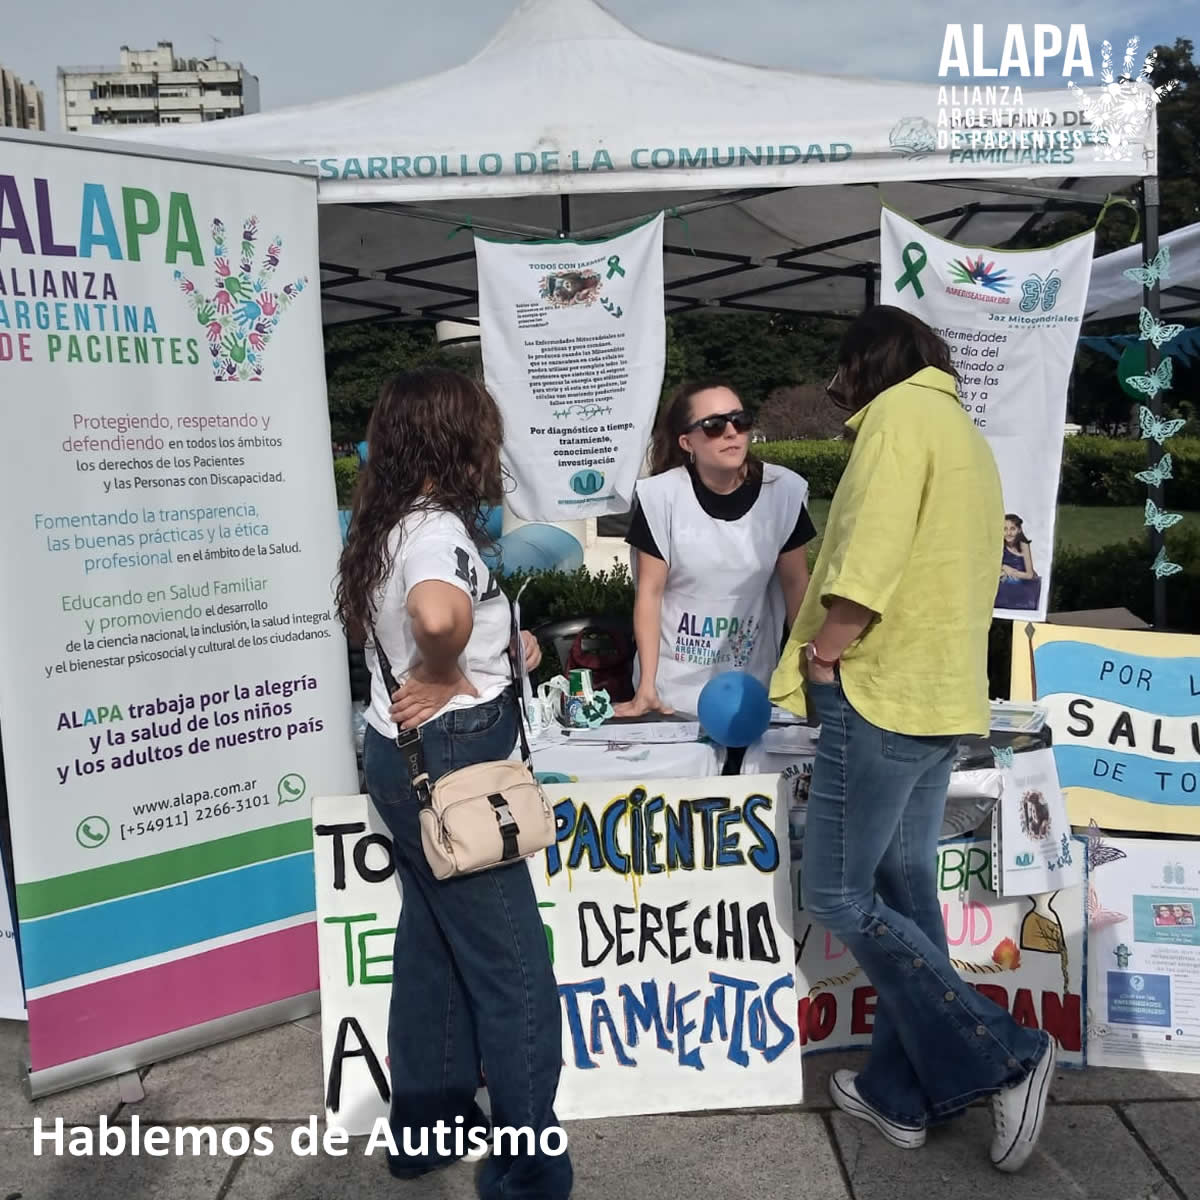 💙 El sábado participamos en la jornada por el Día Mundial de Concientización del Autismo realizada en La Plata, provincia de Buenos Aires.

🙂 Queremos agradecer a la Red TEA La Plata - Berisso y Ensenada por el espacio que nos brindaron.

#SomosALAPA #Austimo #HablemosDeAutismo